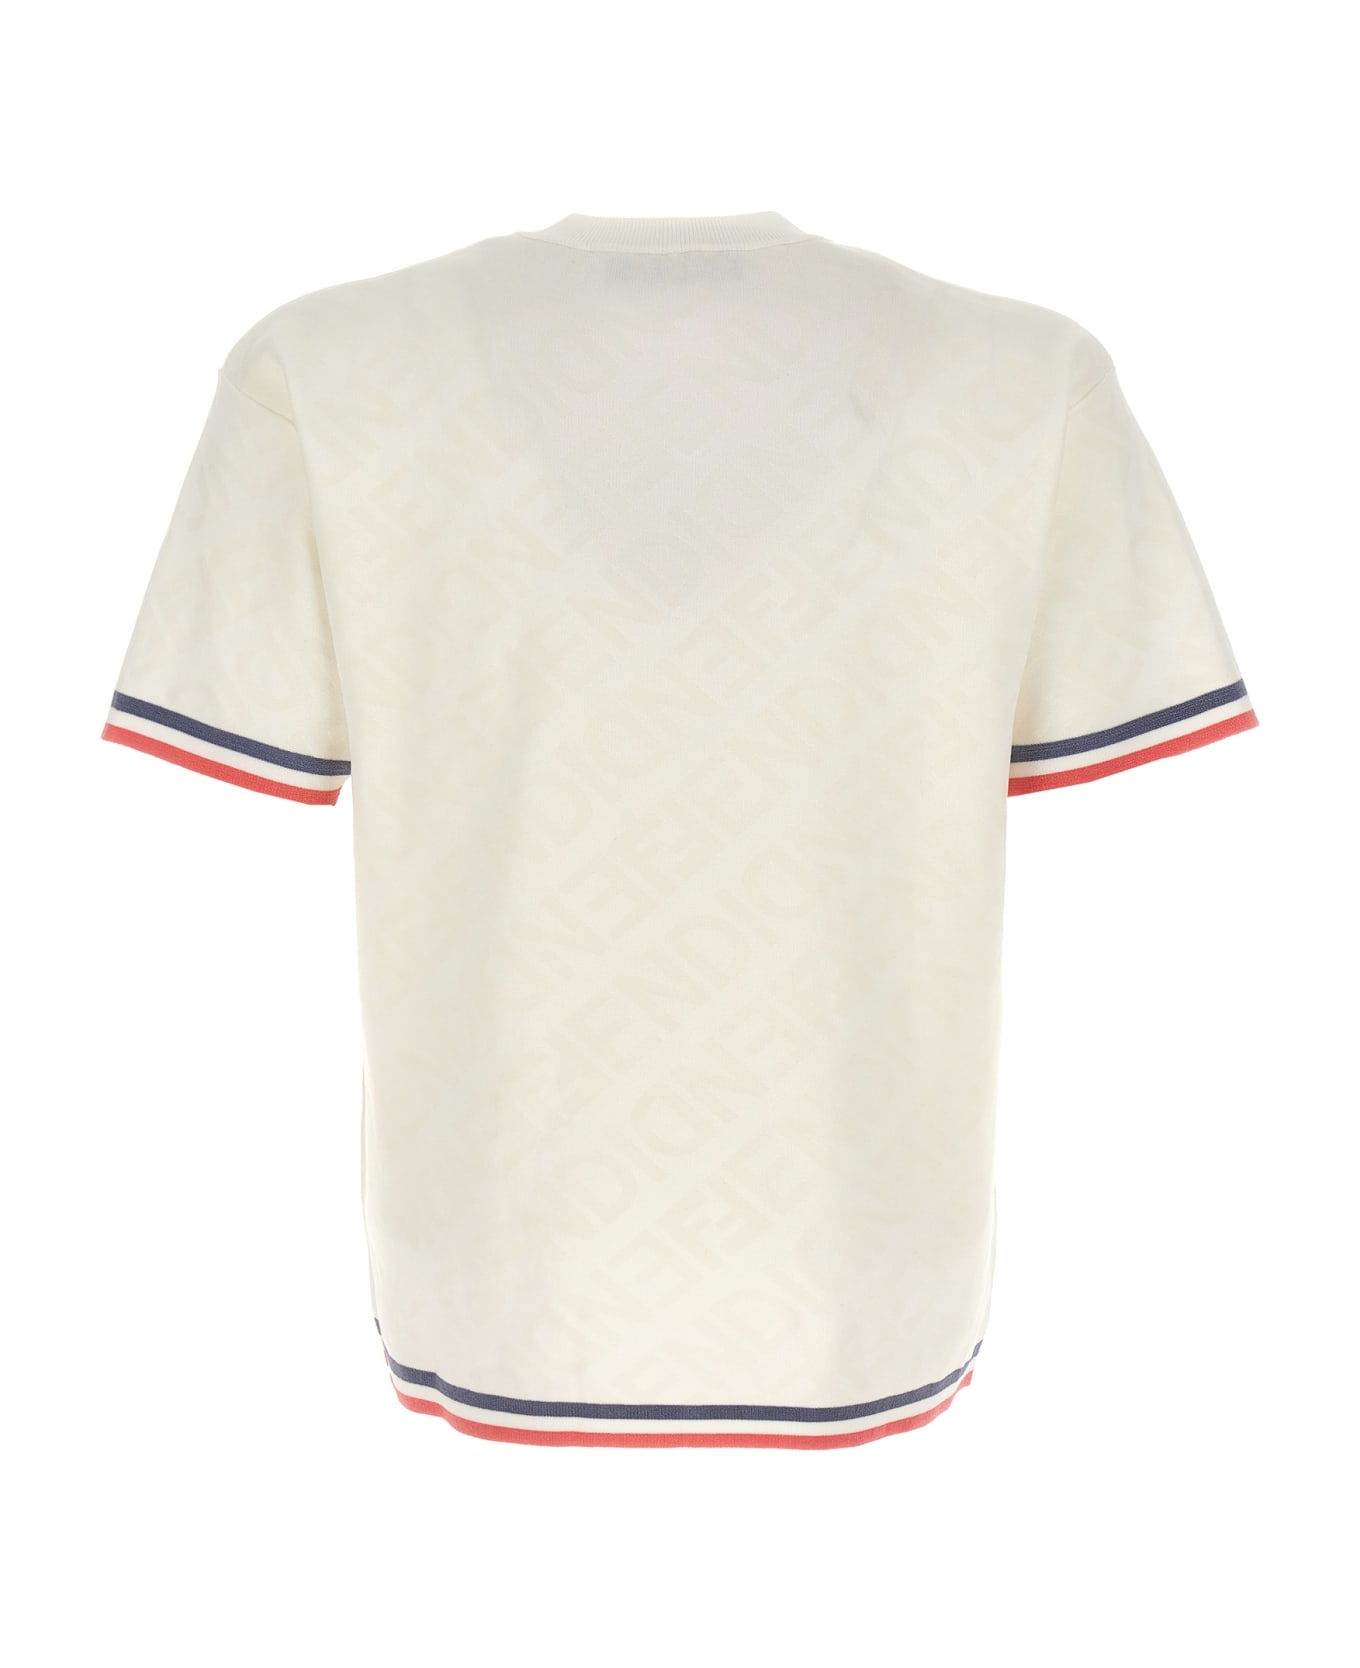 Fendi Viscose Blend T-shirt - White